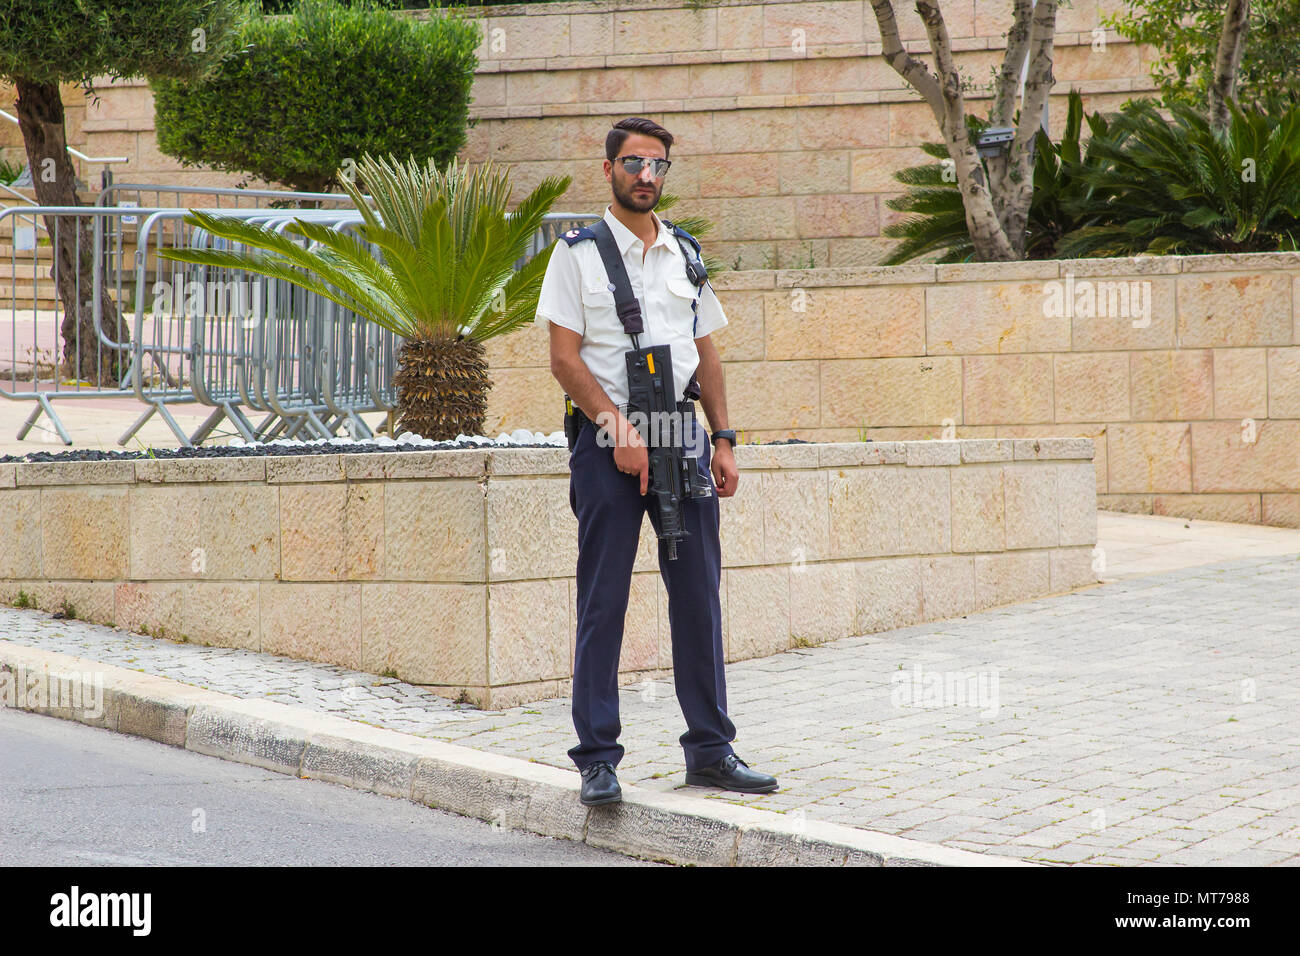 8 mai 2018 l'homme du personnel de sécurité armé le véhicule check point sur la route à l'entrée de la Knesset le parlement israélien Jérusalem Bâtiments Banque D'Images